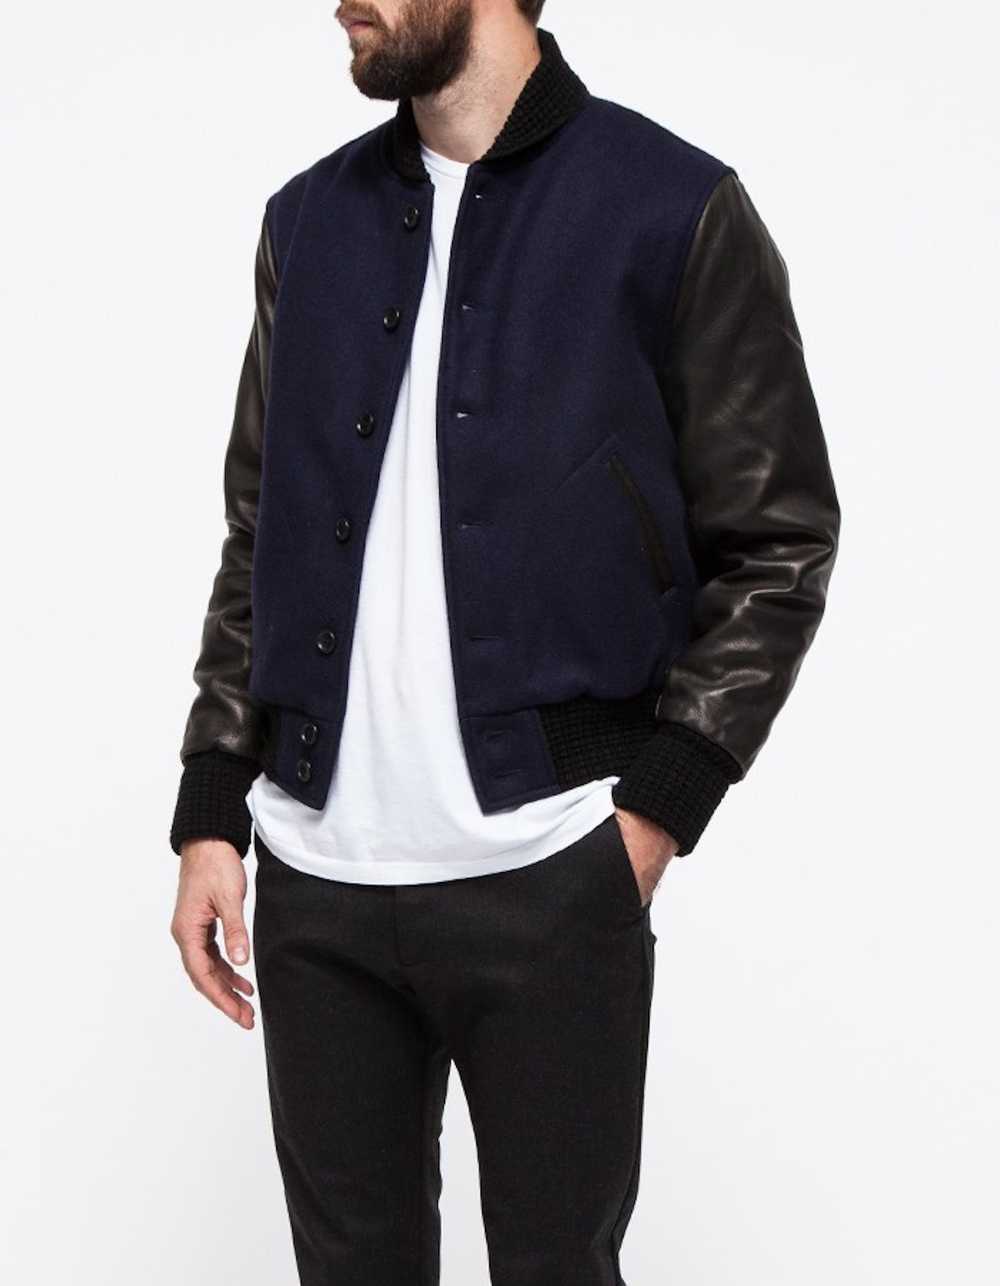 Unis Wool & Leather Varsity Jacket - image 5